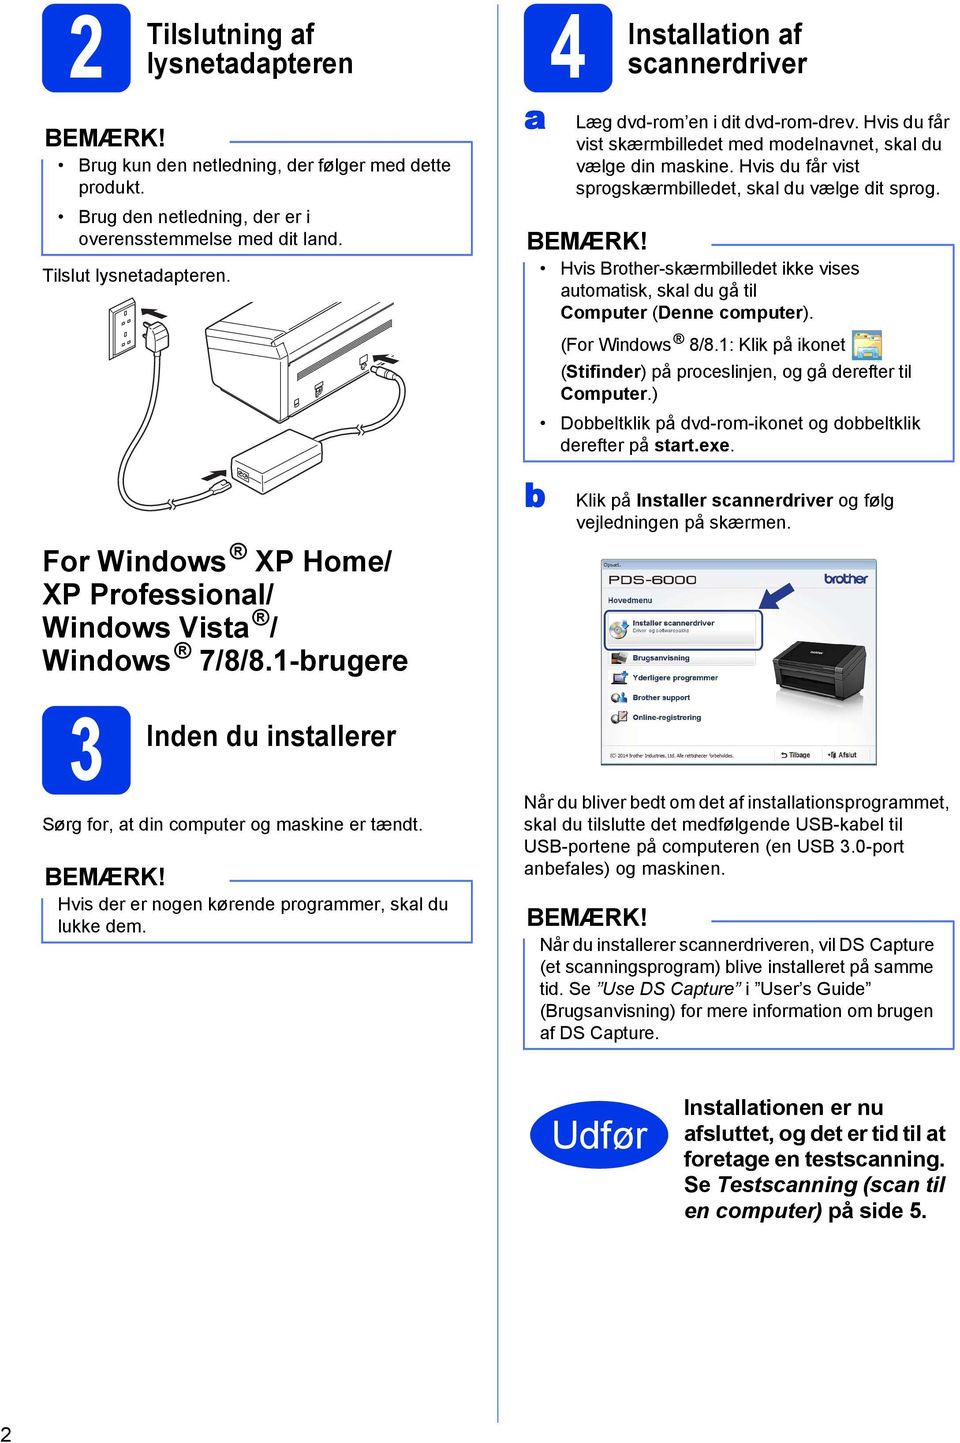 Hvis du får vist sprogskærmbilledet, skal du vælge dit sprog. Hvis Brother-skærmbilledet ikke vises automatisk, skal du gå til Computer (Denne computer). (For Windows 8/8.